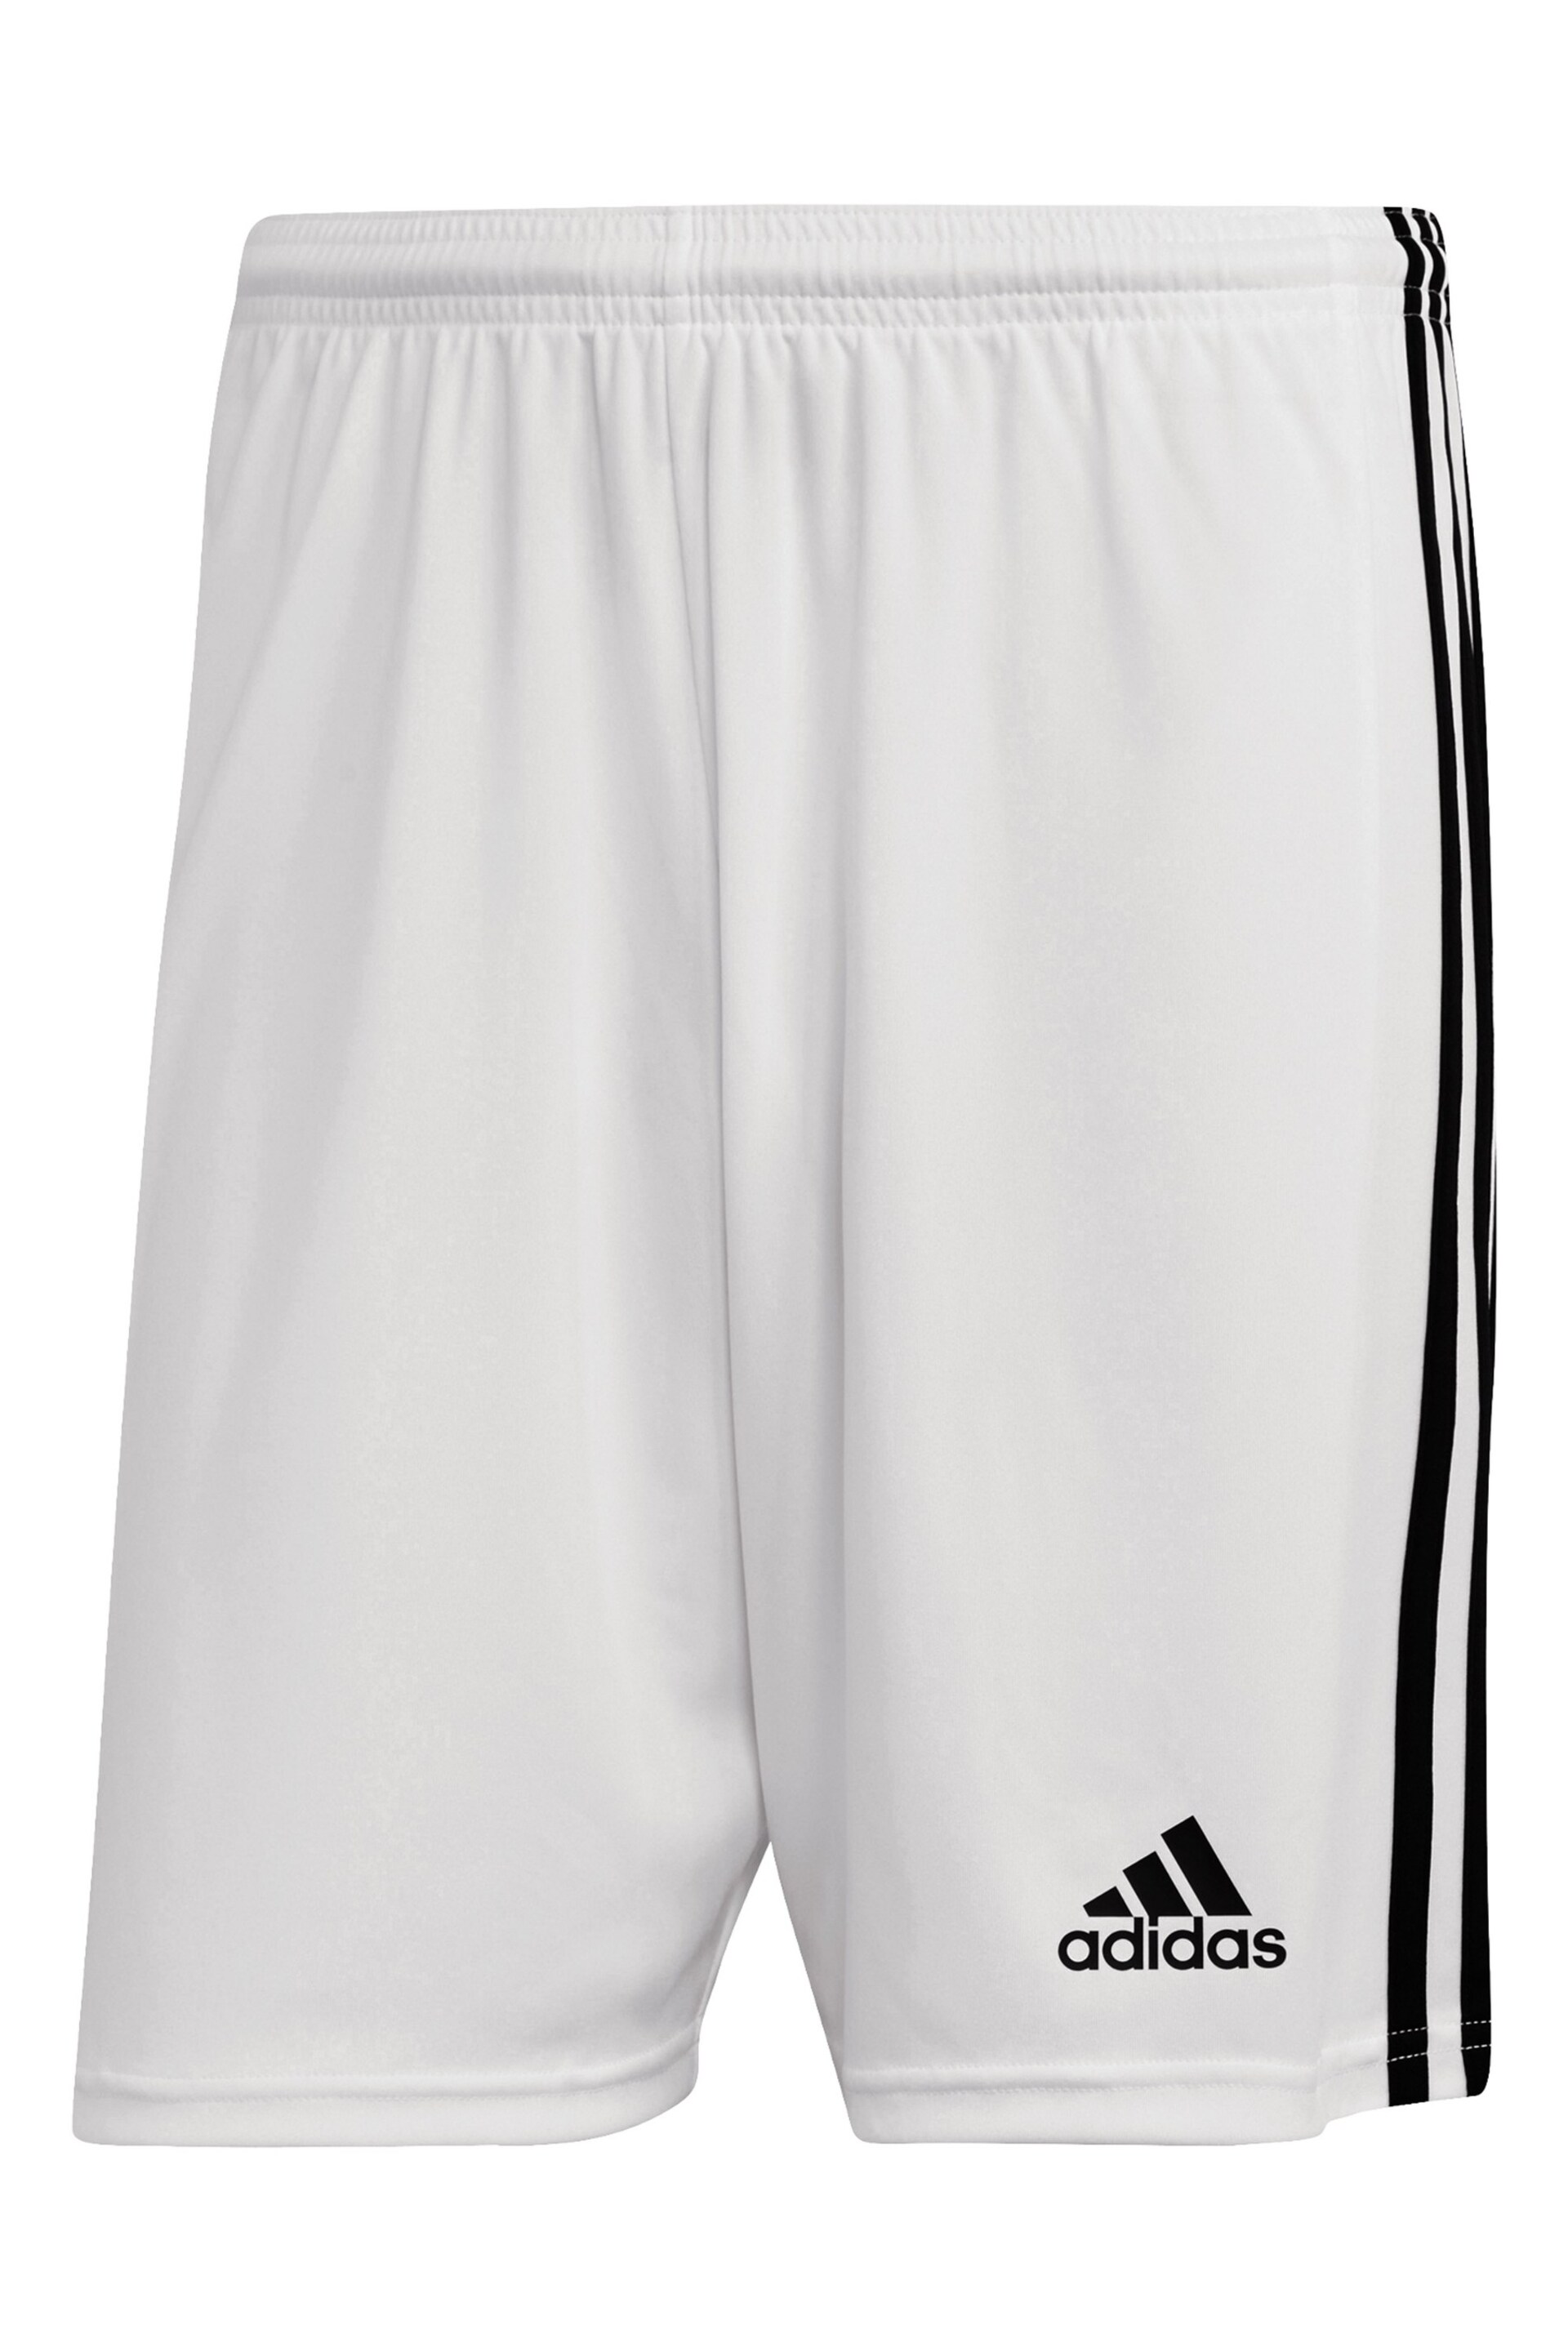 adidas White Football Squadra Shorts - Image 6 of 6